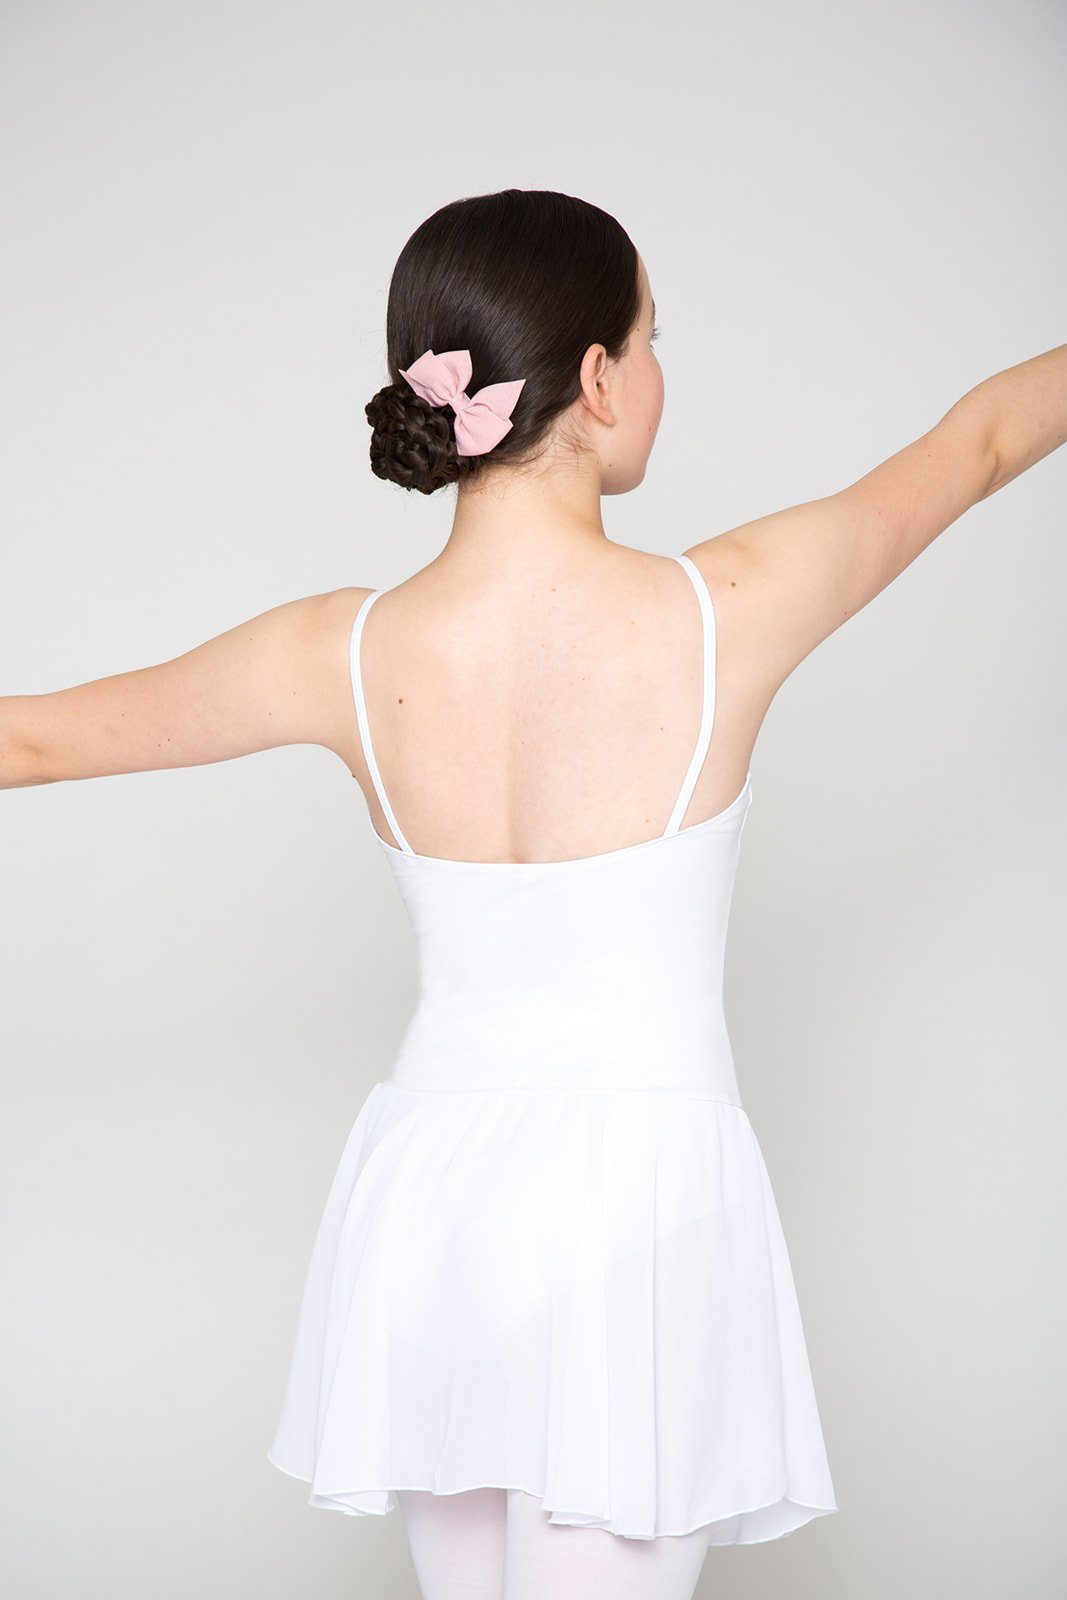 tanzmuster Chiffonkleid Ballettkleid mit weiß Mädchen Spaghettiträgern Ballettbody mit Maggie Chiffon Röckchen